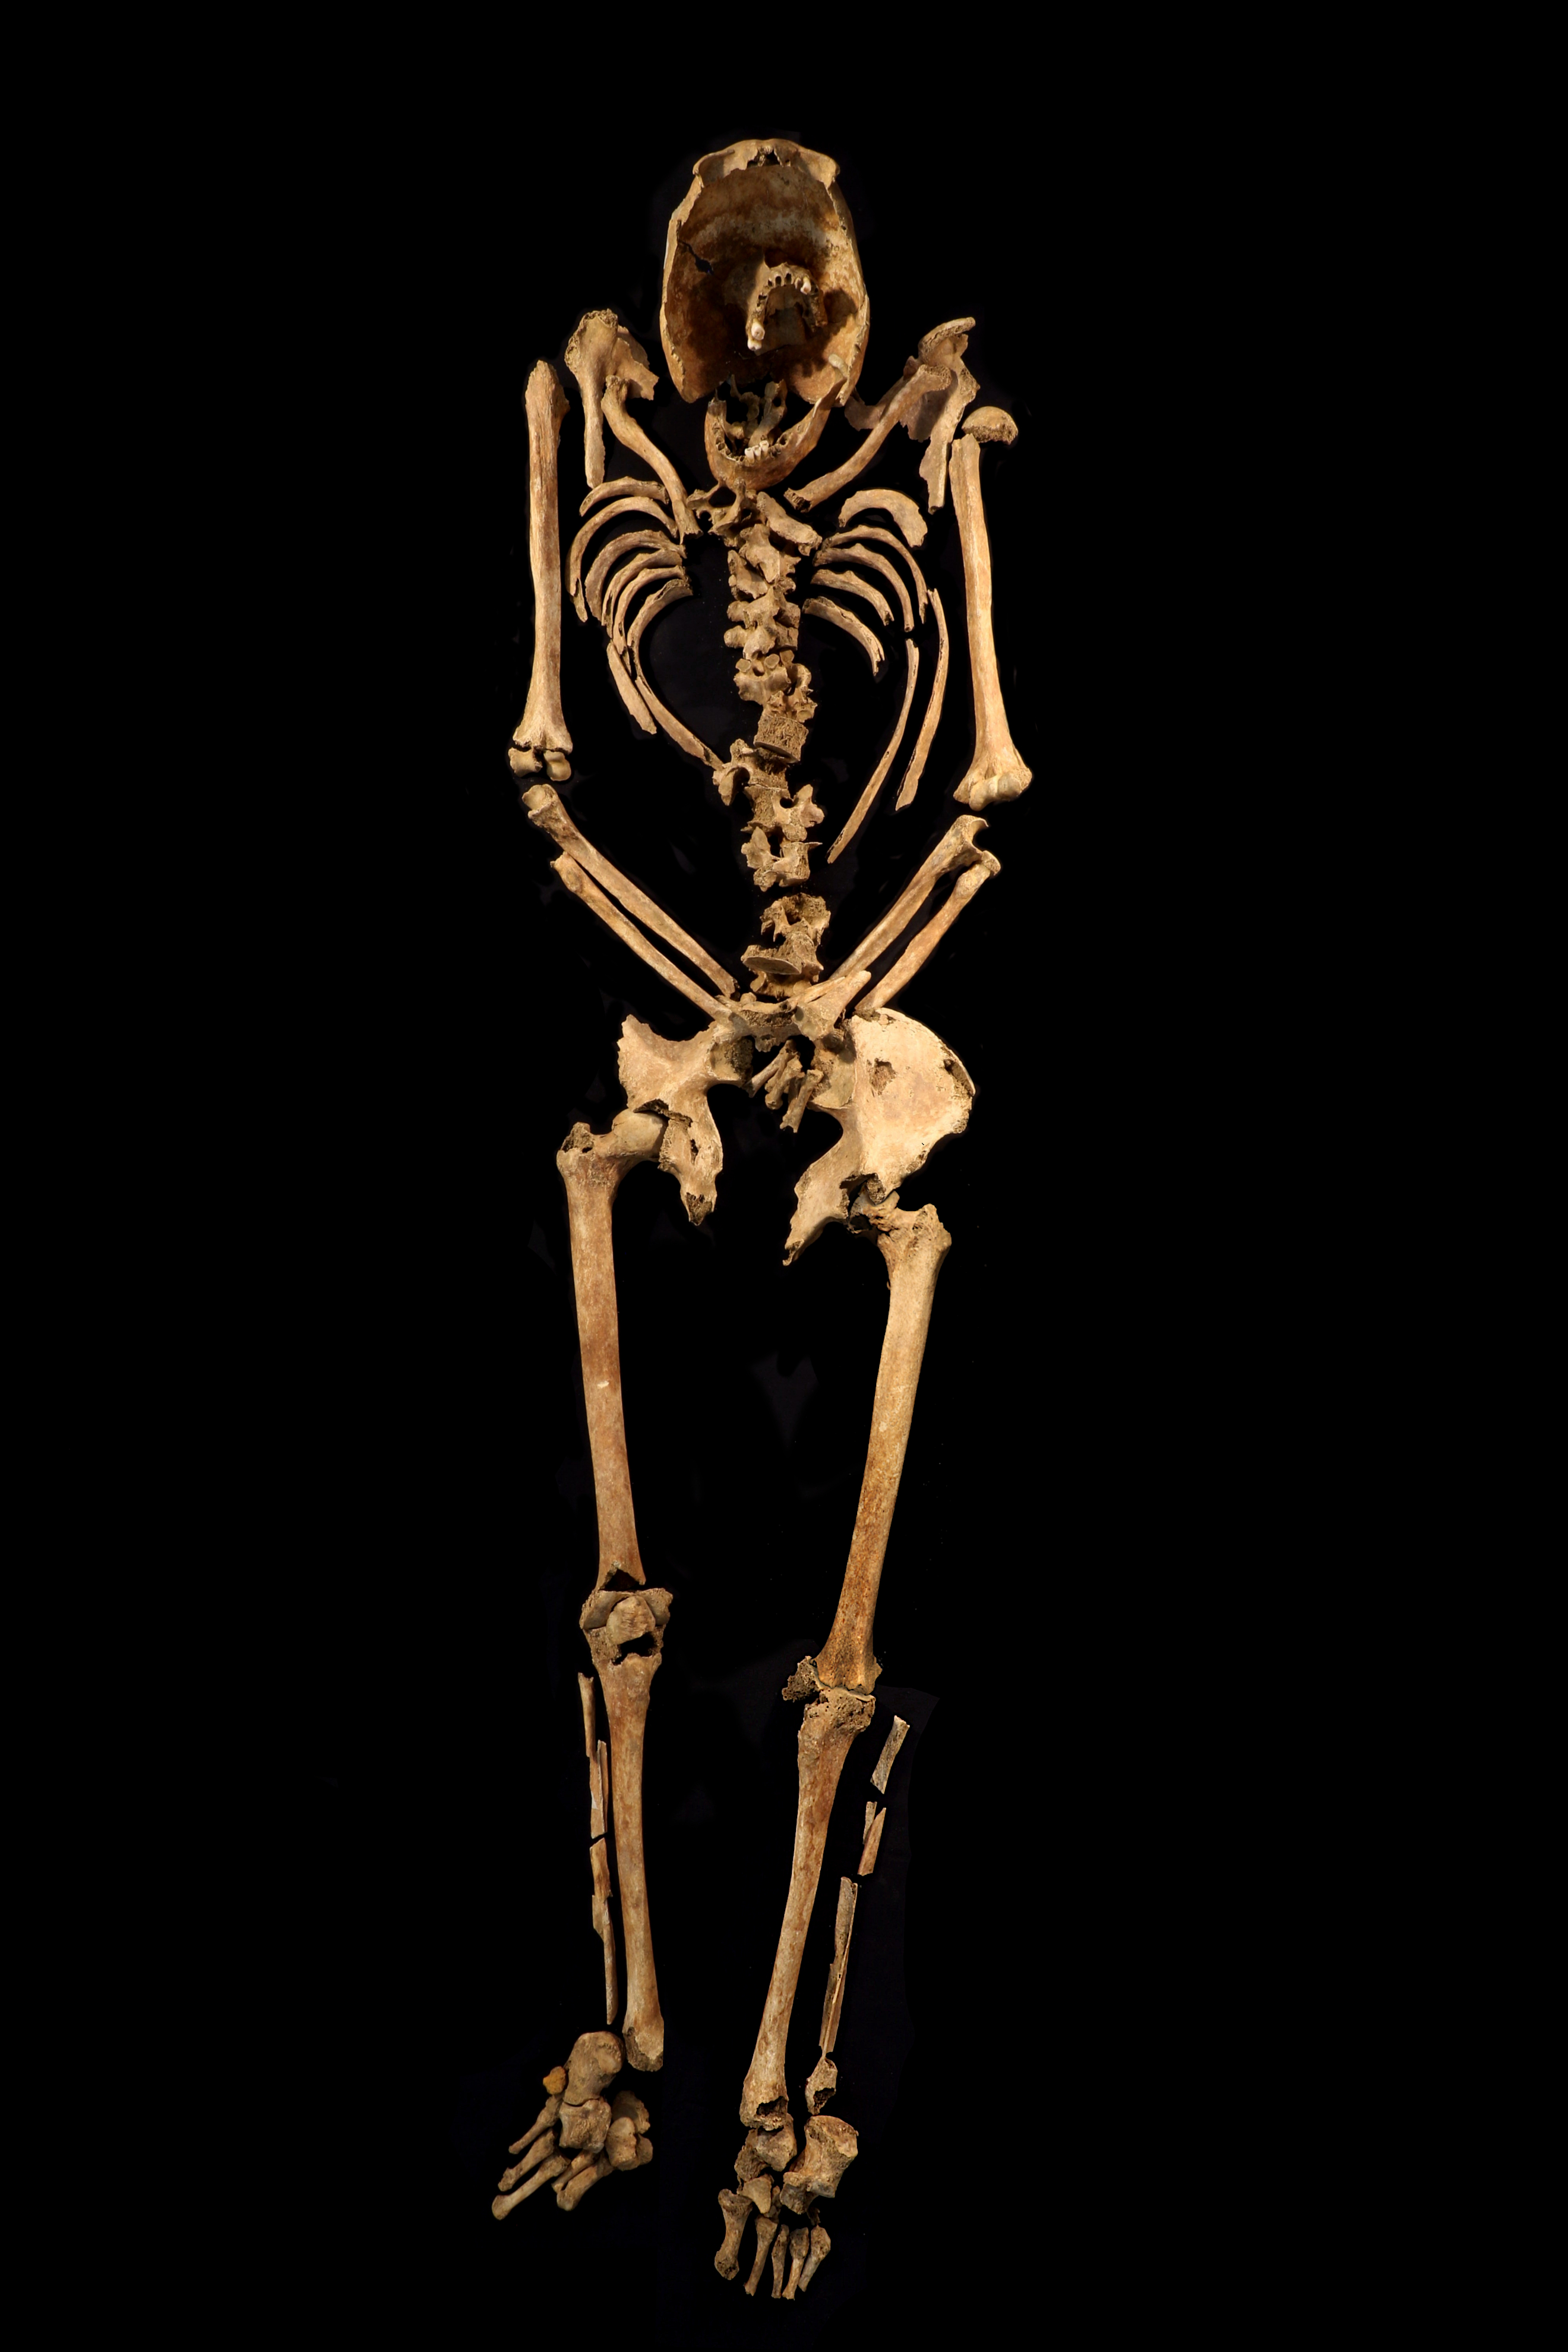 El esqueleto revela huesos fracturados, pérdida de dientes y artritis degenerativa